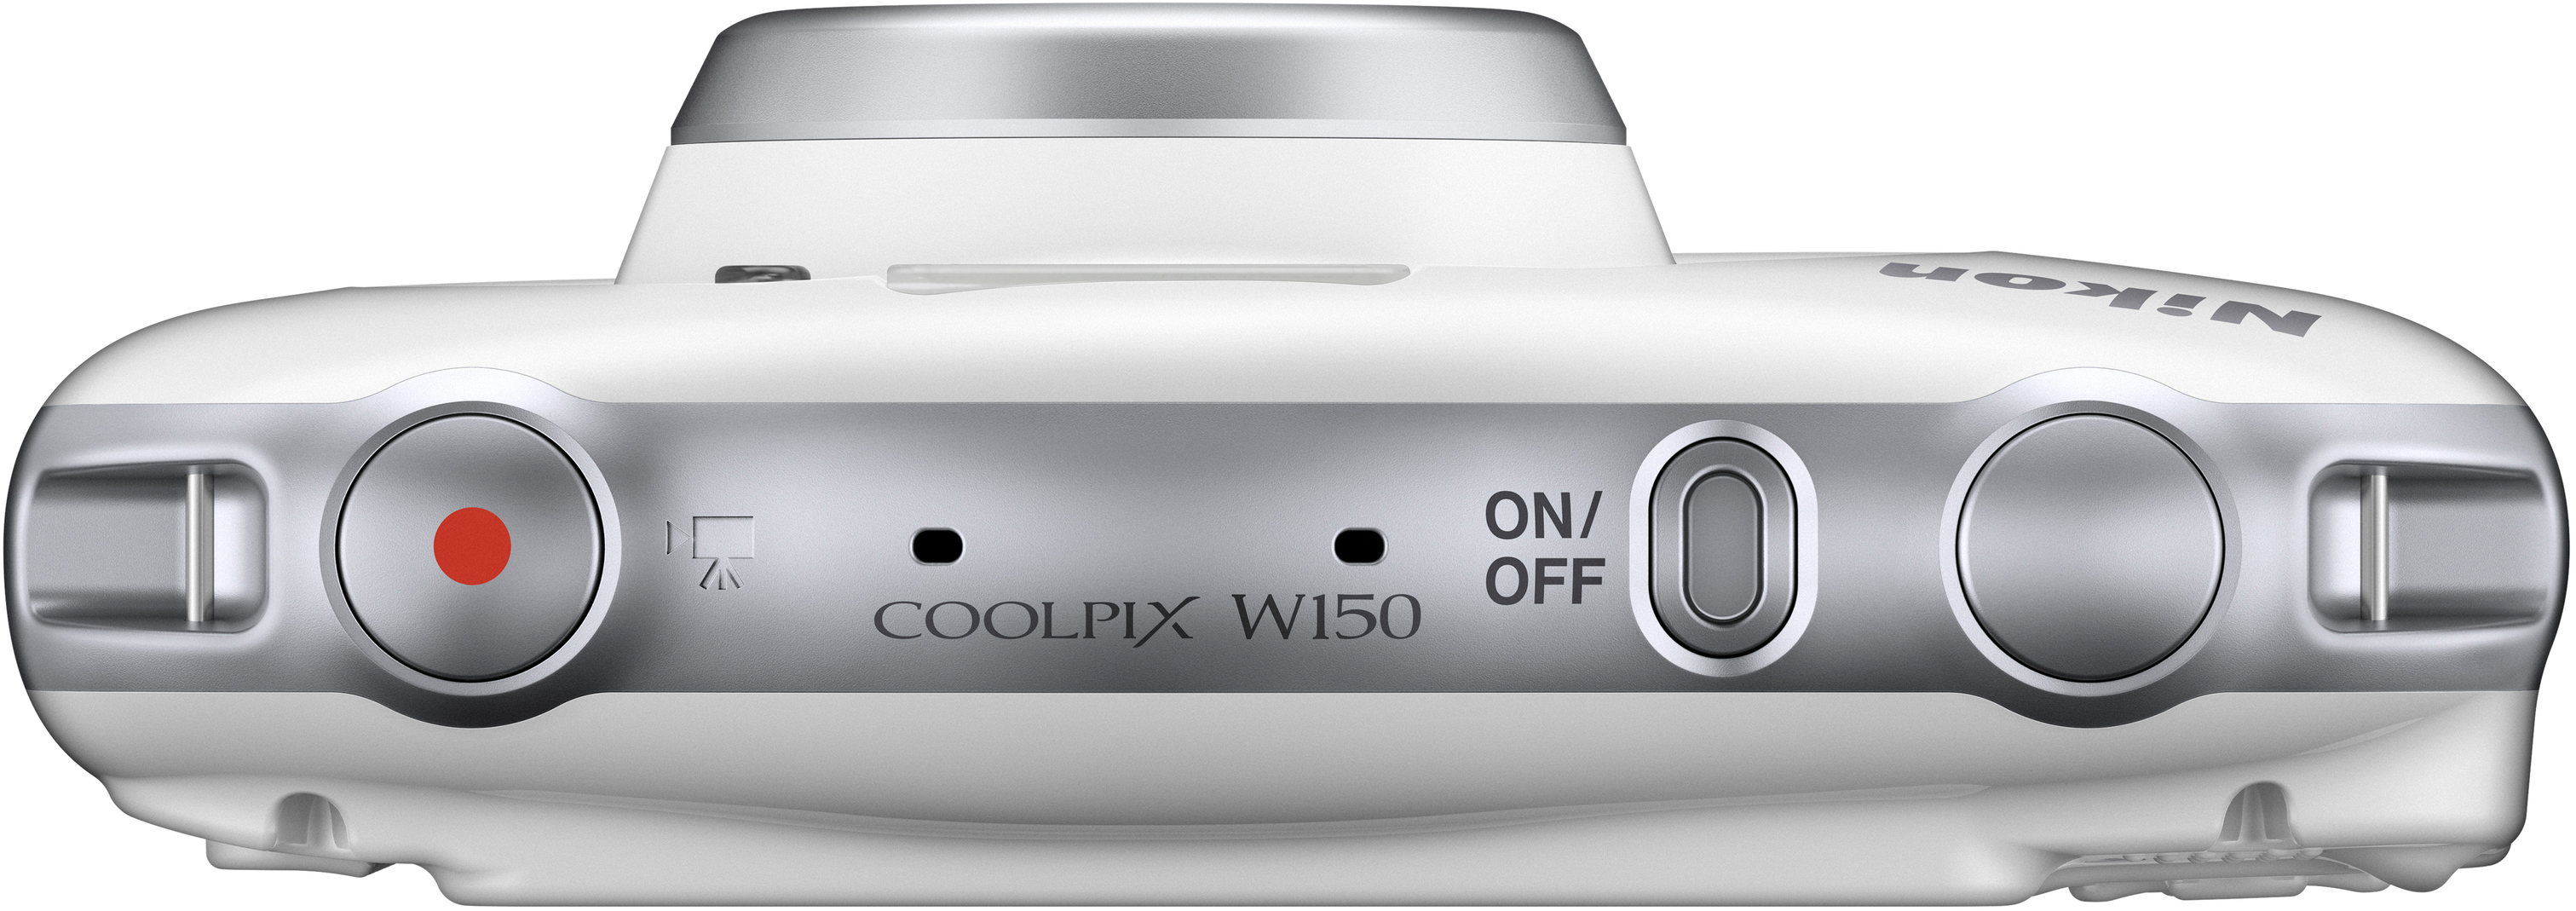 NIKON W 150 Digitalkamera opt. Rucksack Kit Weiß, Zoom, LCD-TFT fach 3